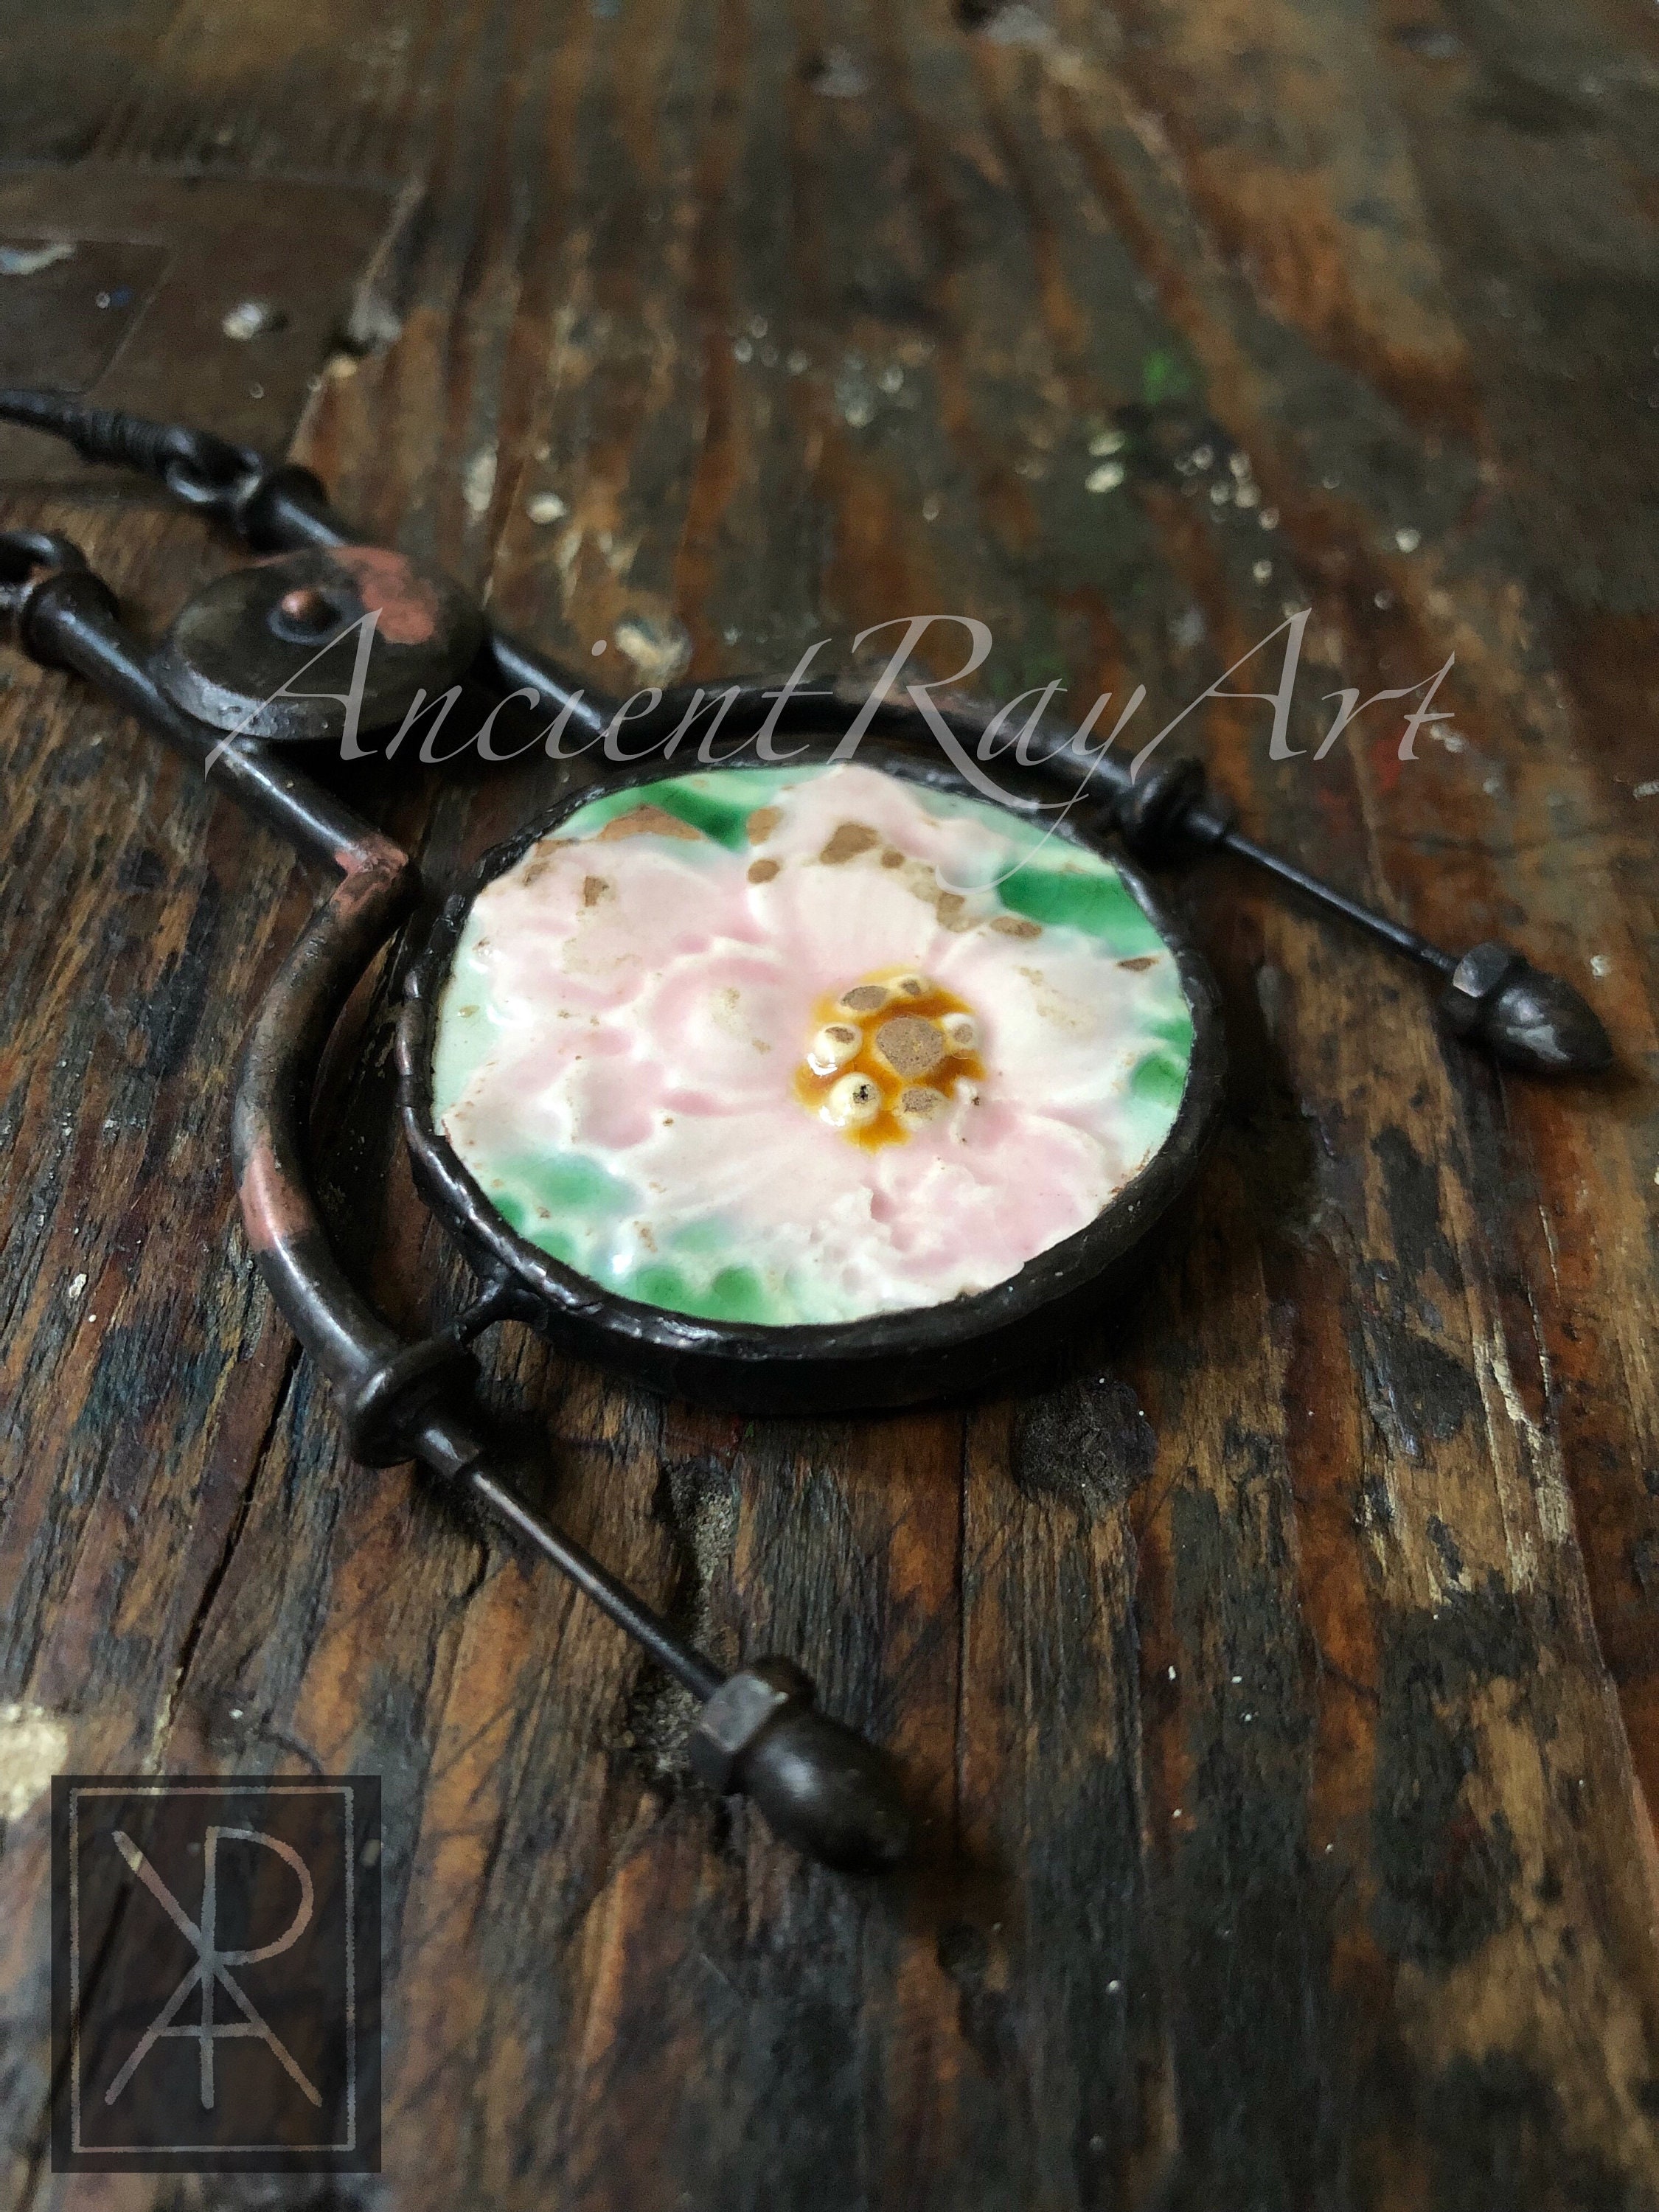 The Wind Flower  Unique handmade artisan pendant  antique faience pendant  ancient time unique necklace